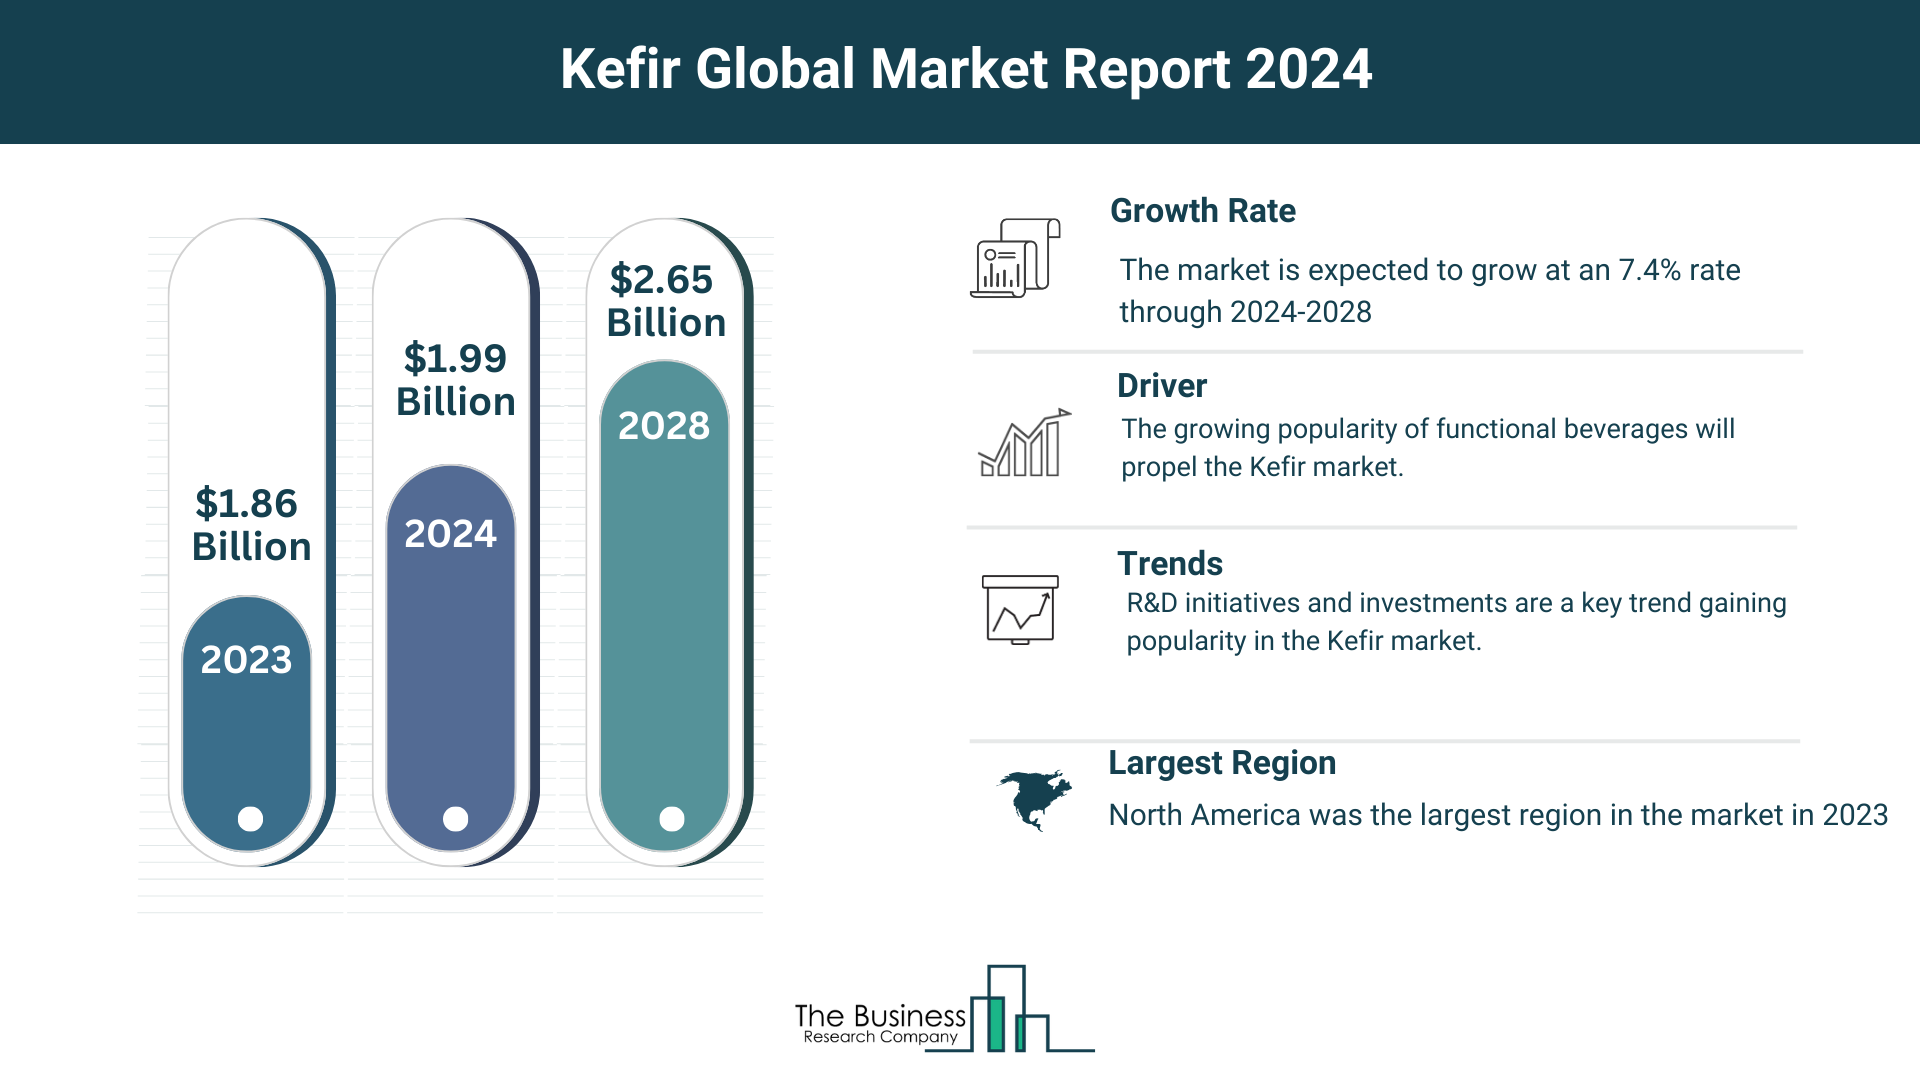 Global Kefir Market